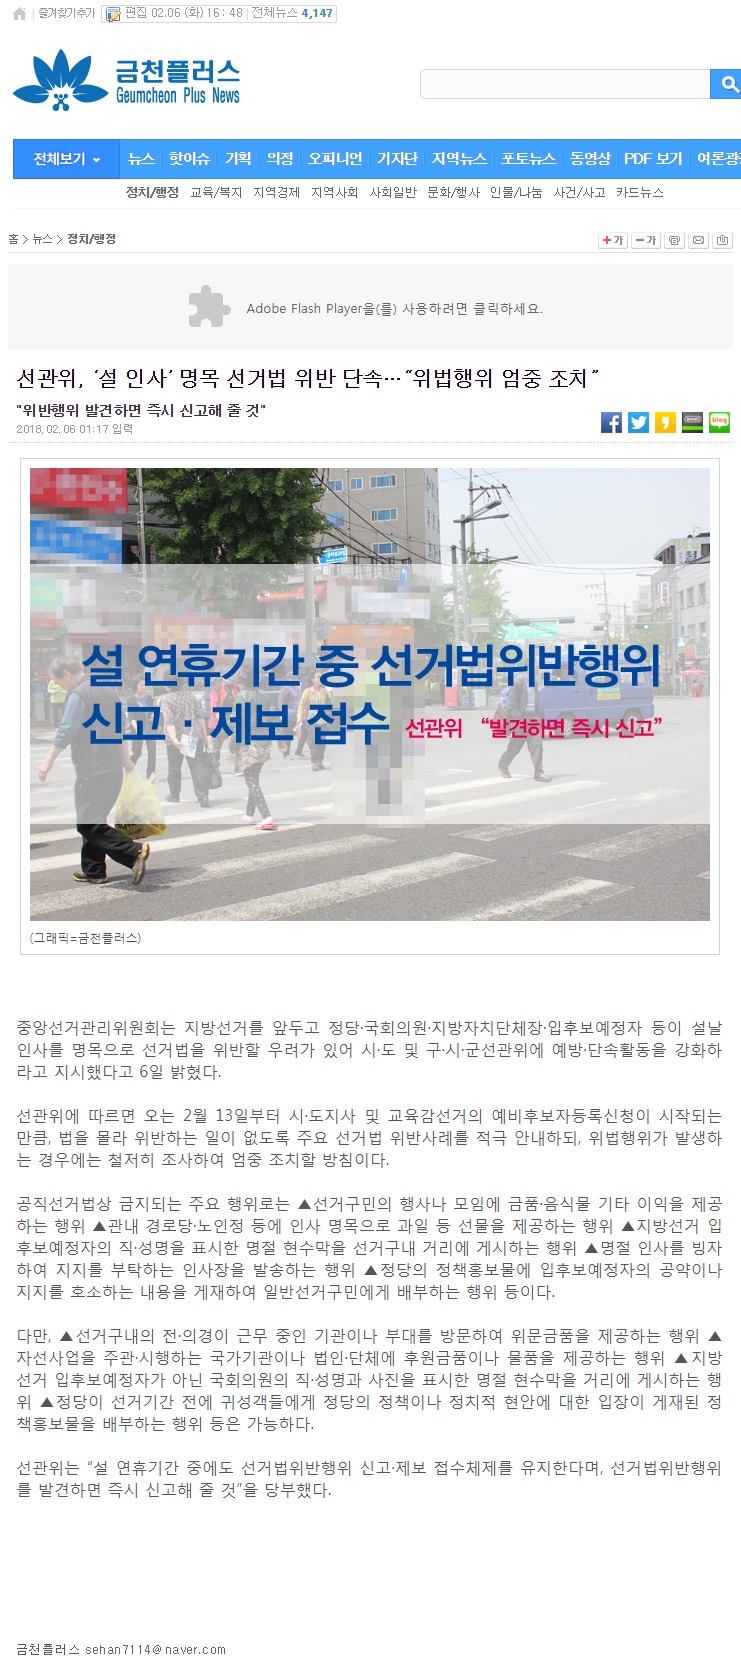 선관위 설 인사 명목 선거법 위반 단속 강화 보도자료 금천플러스 신문에 게재